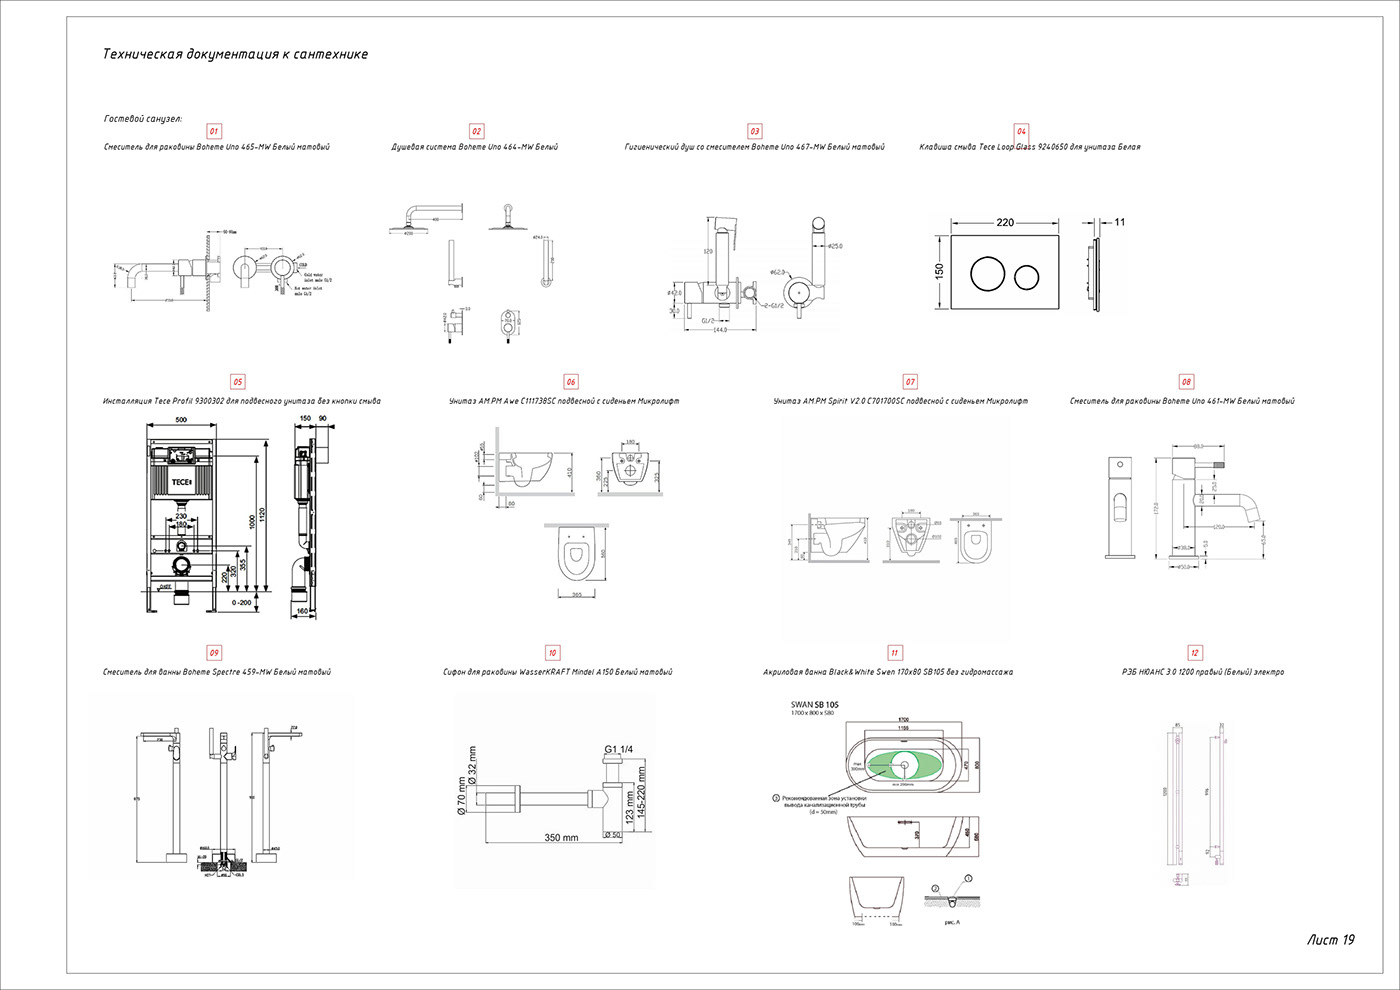 3D arhitecture Autodesk BIM Interior interior design  Layout Layout Design revit Revit Architecture